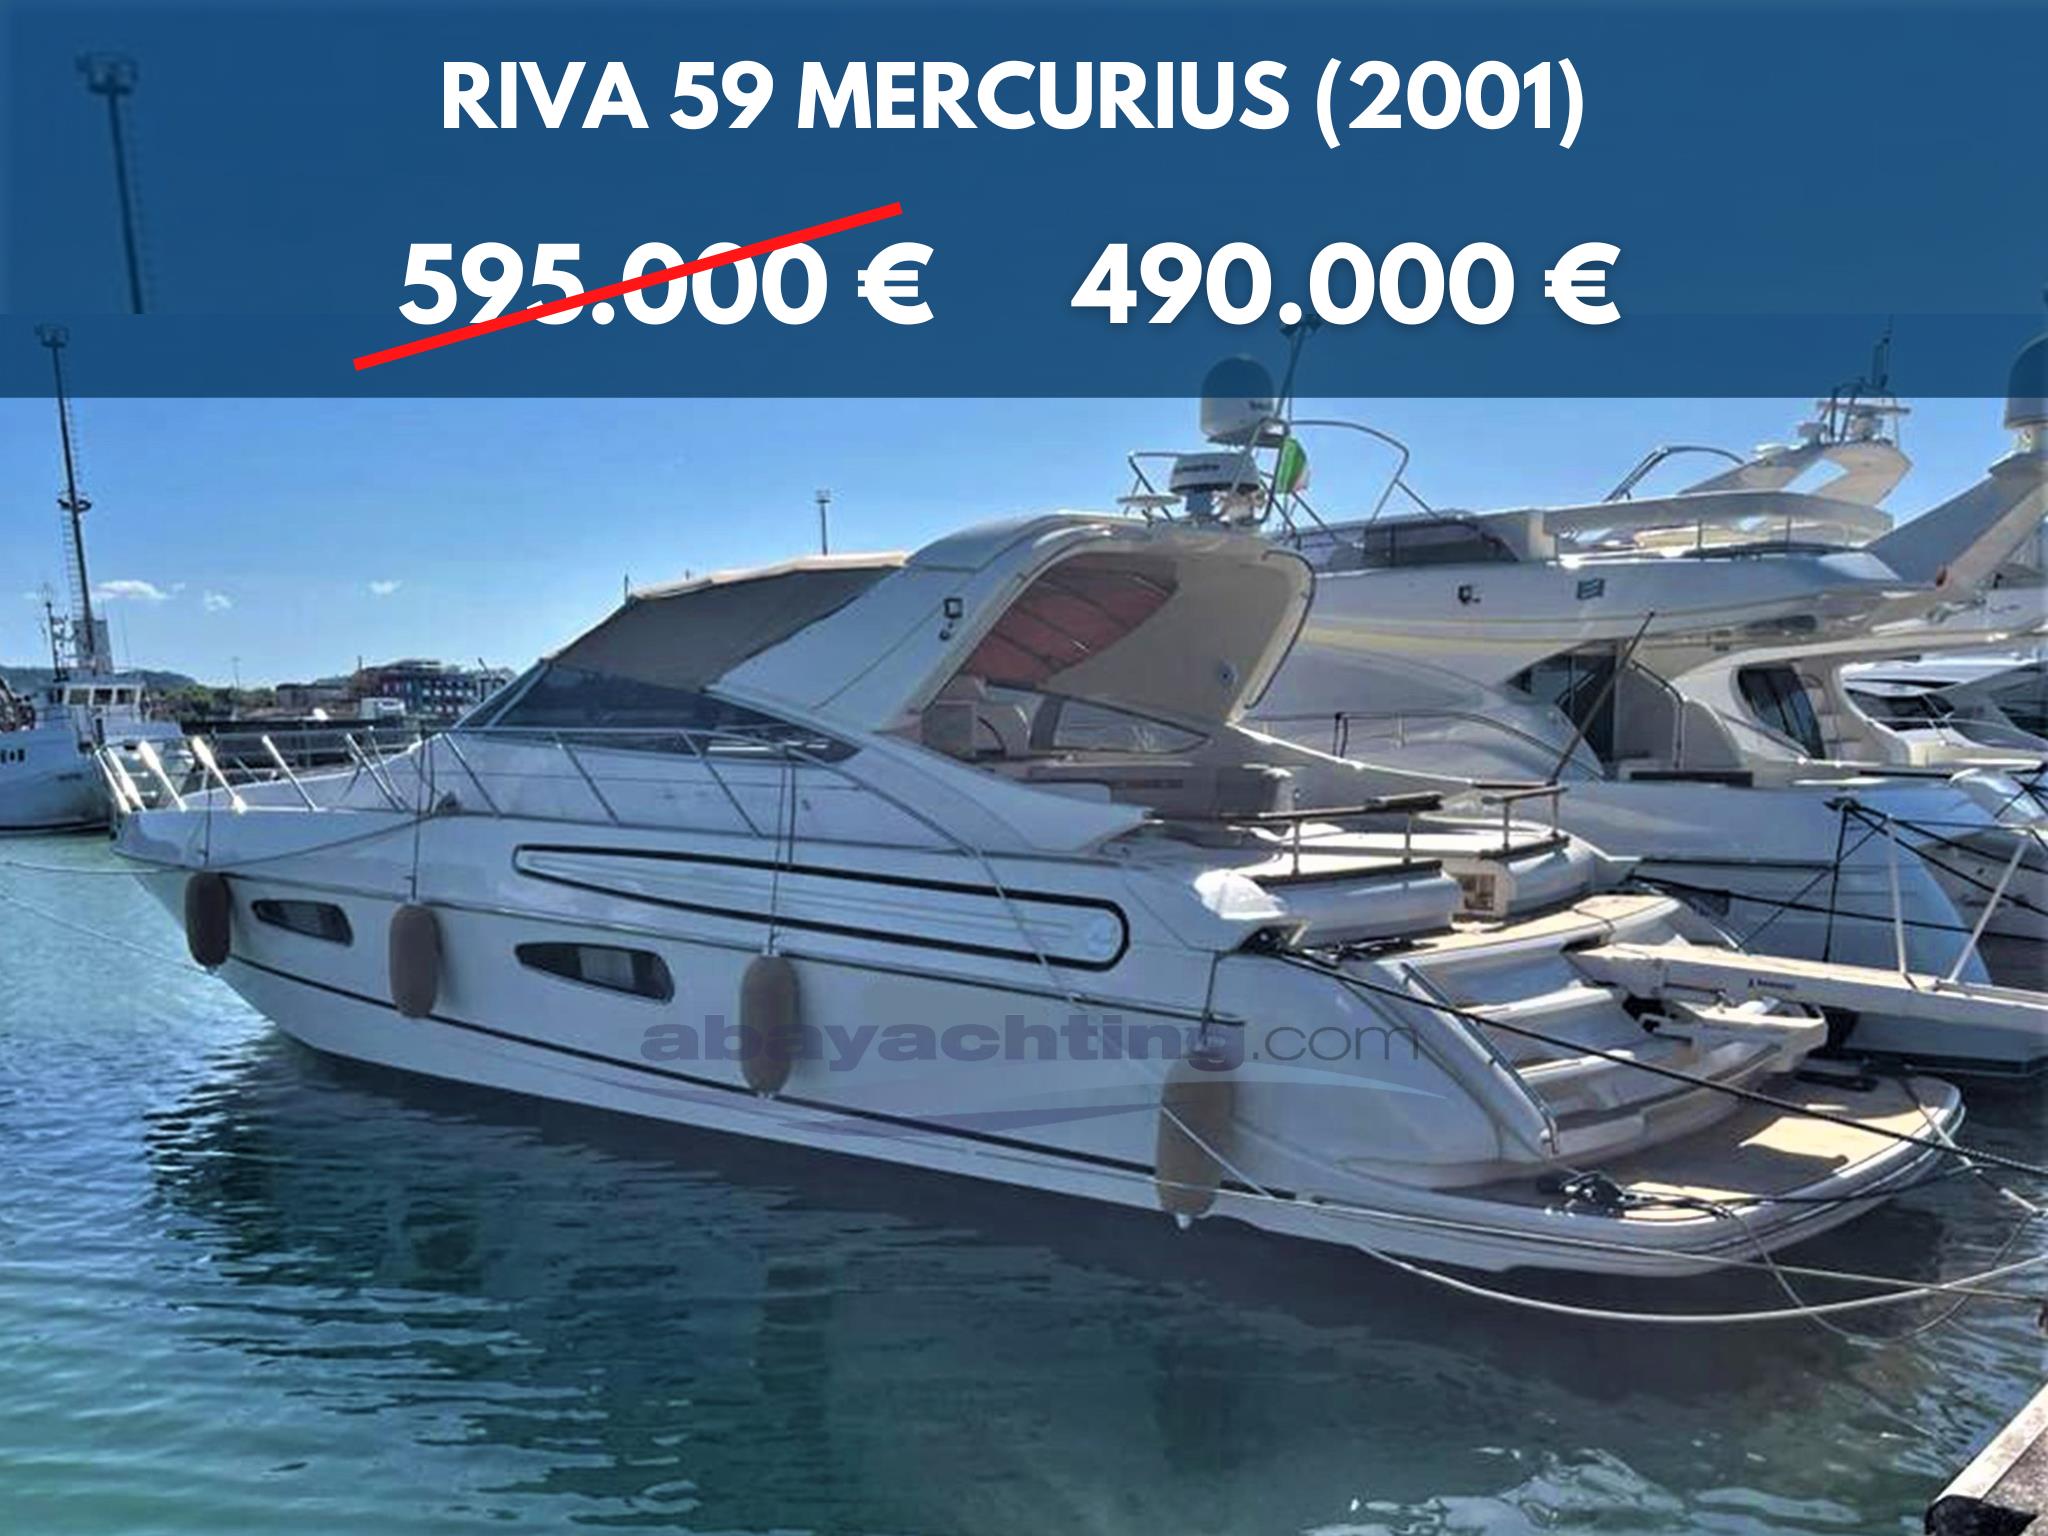 New Price: Riva 59 Mercurius